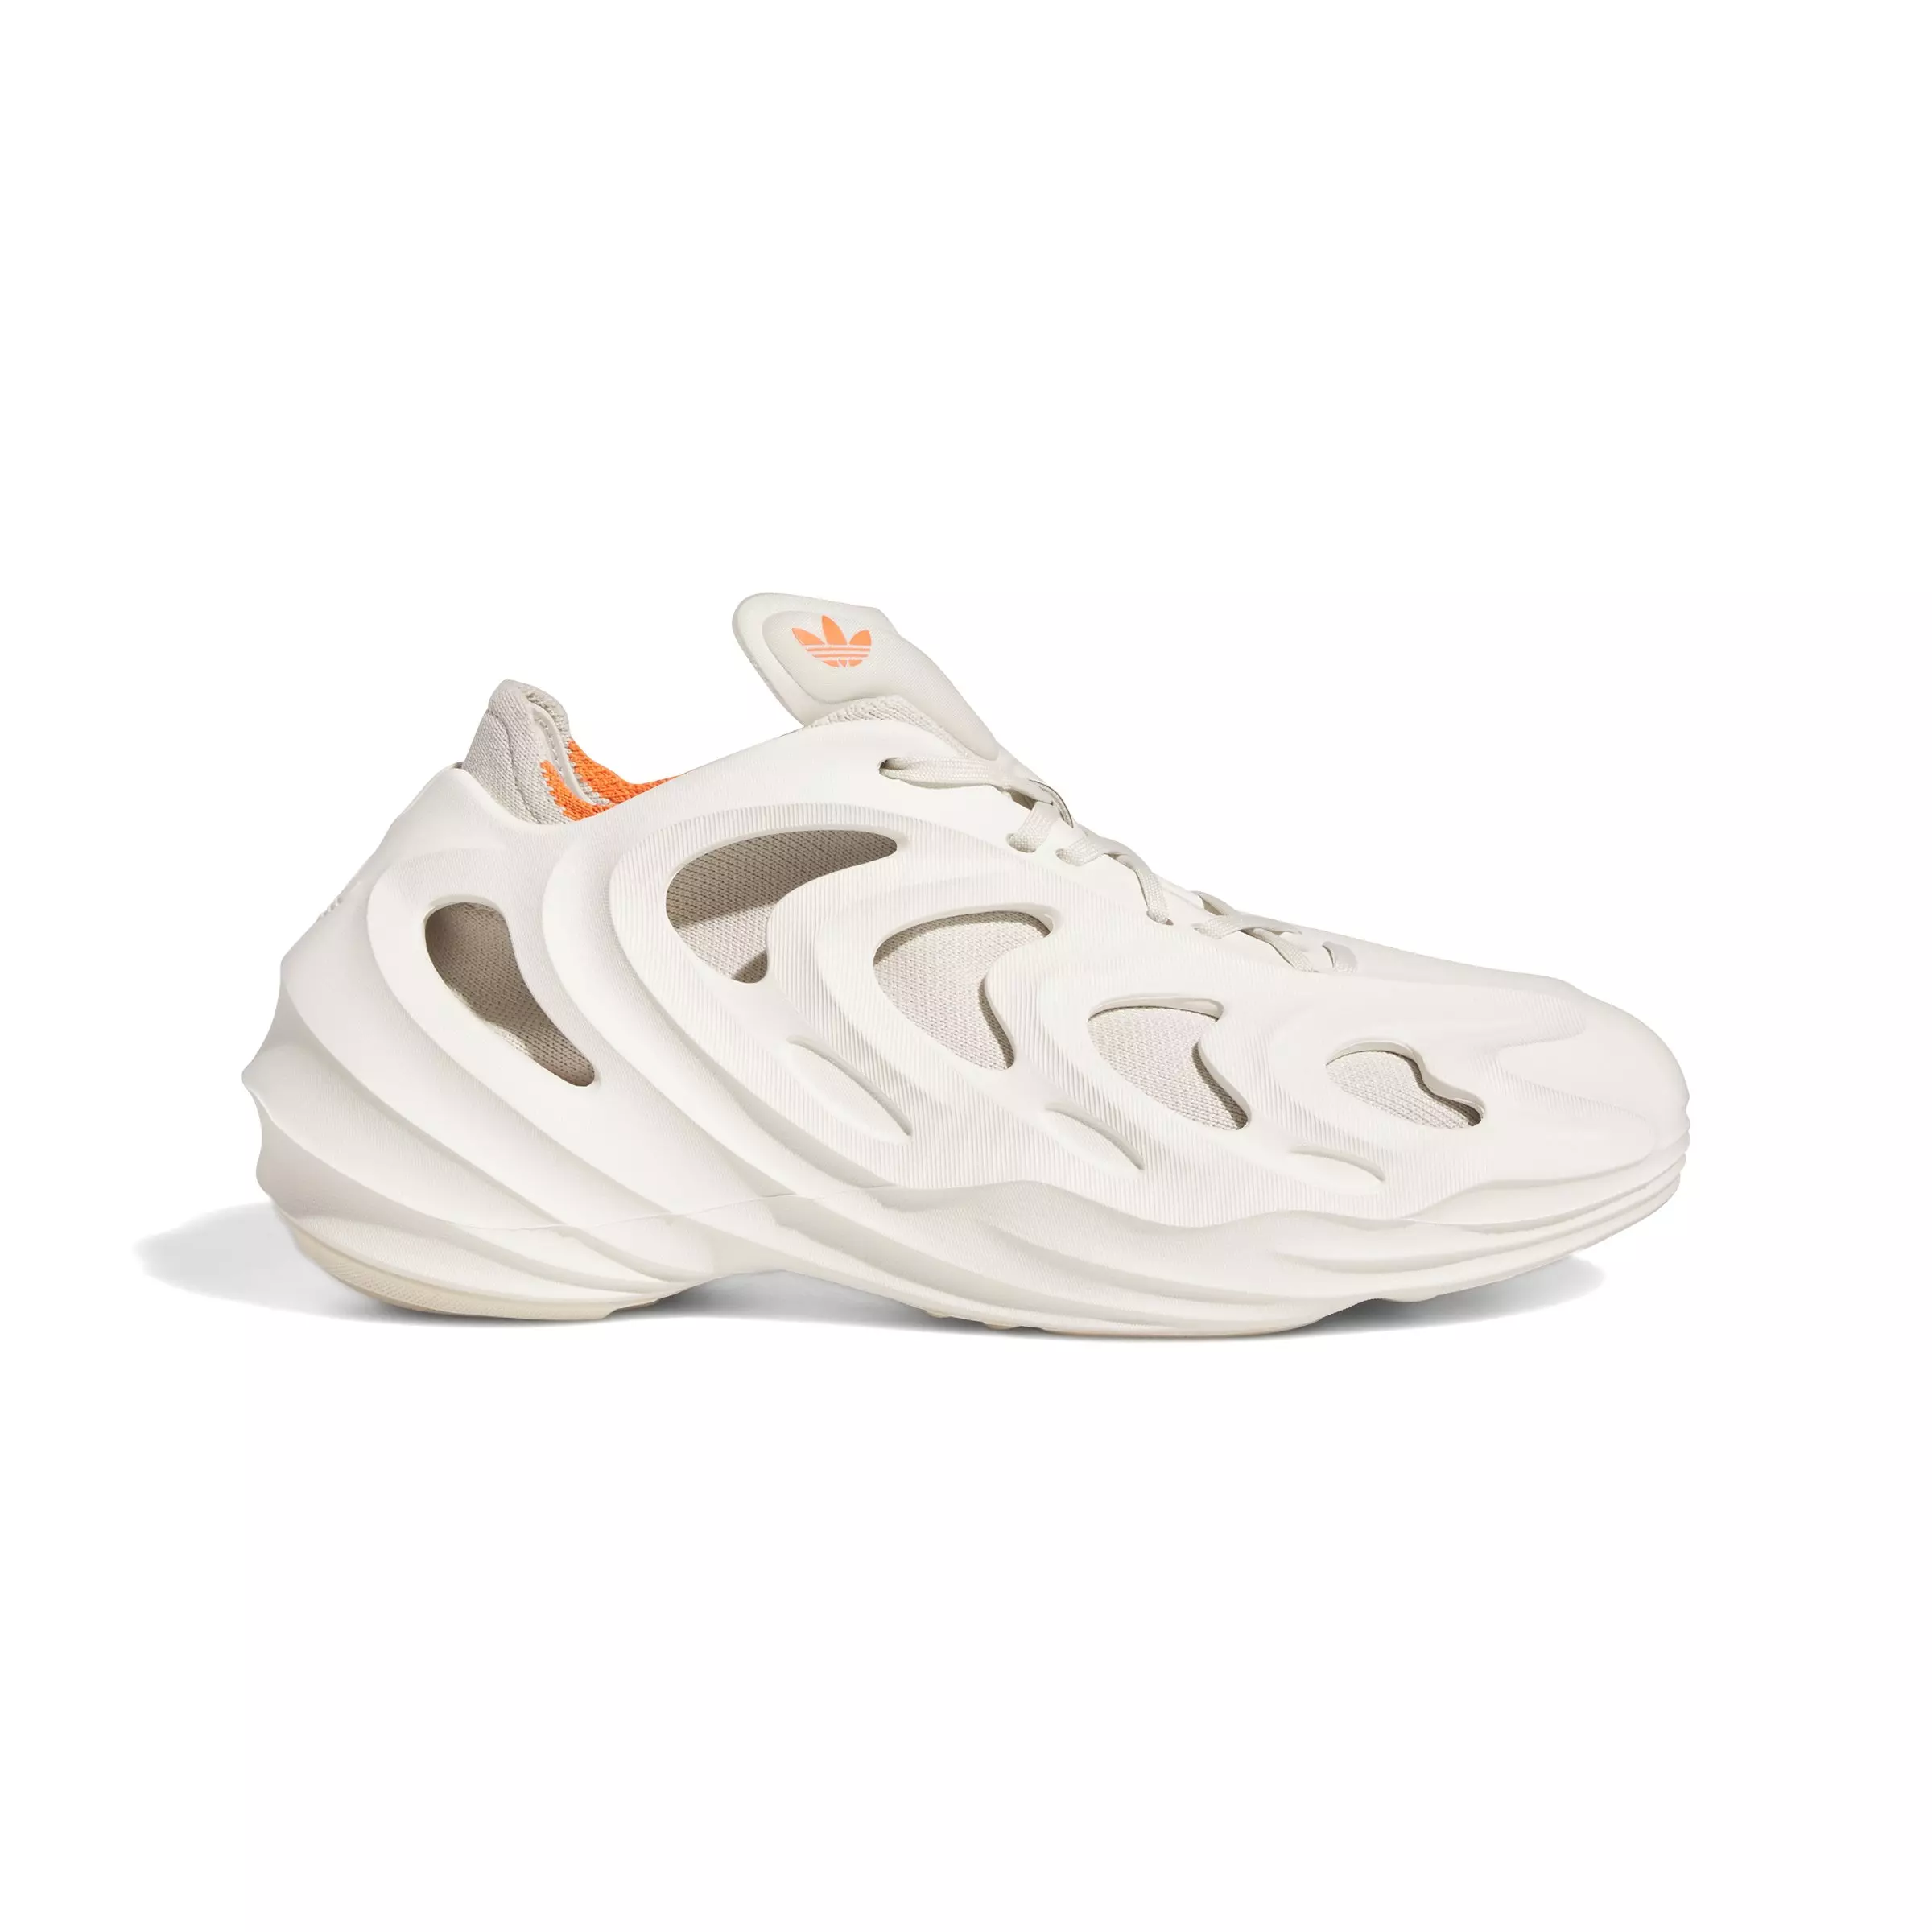 Exoskeletal Foam Sneakers : Adifom Q